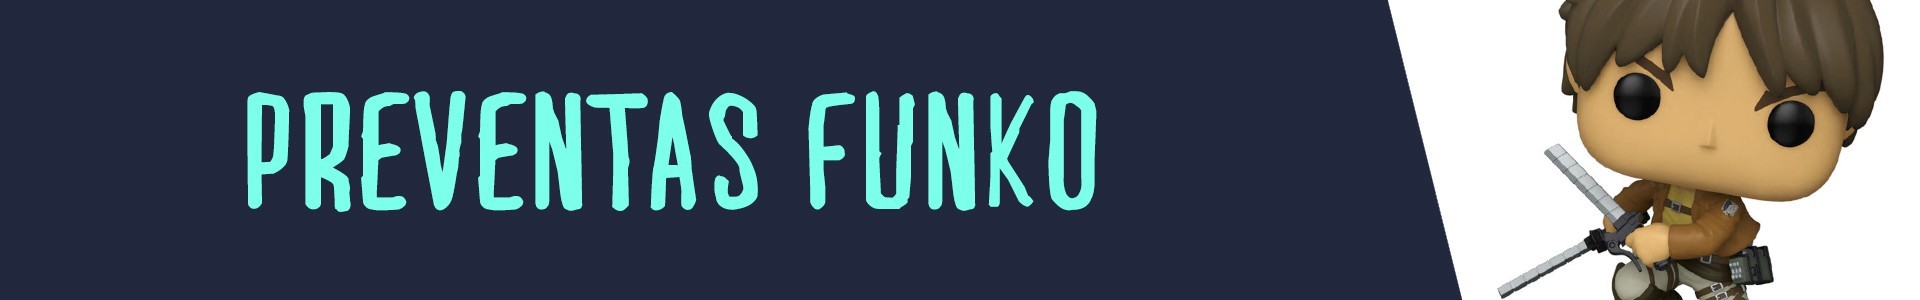 Preventas Funko